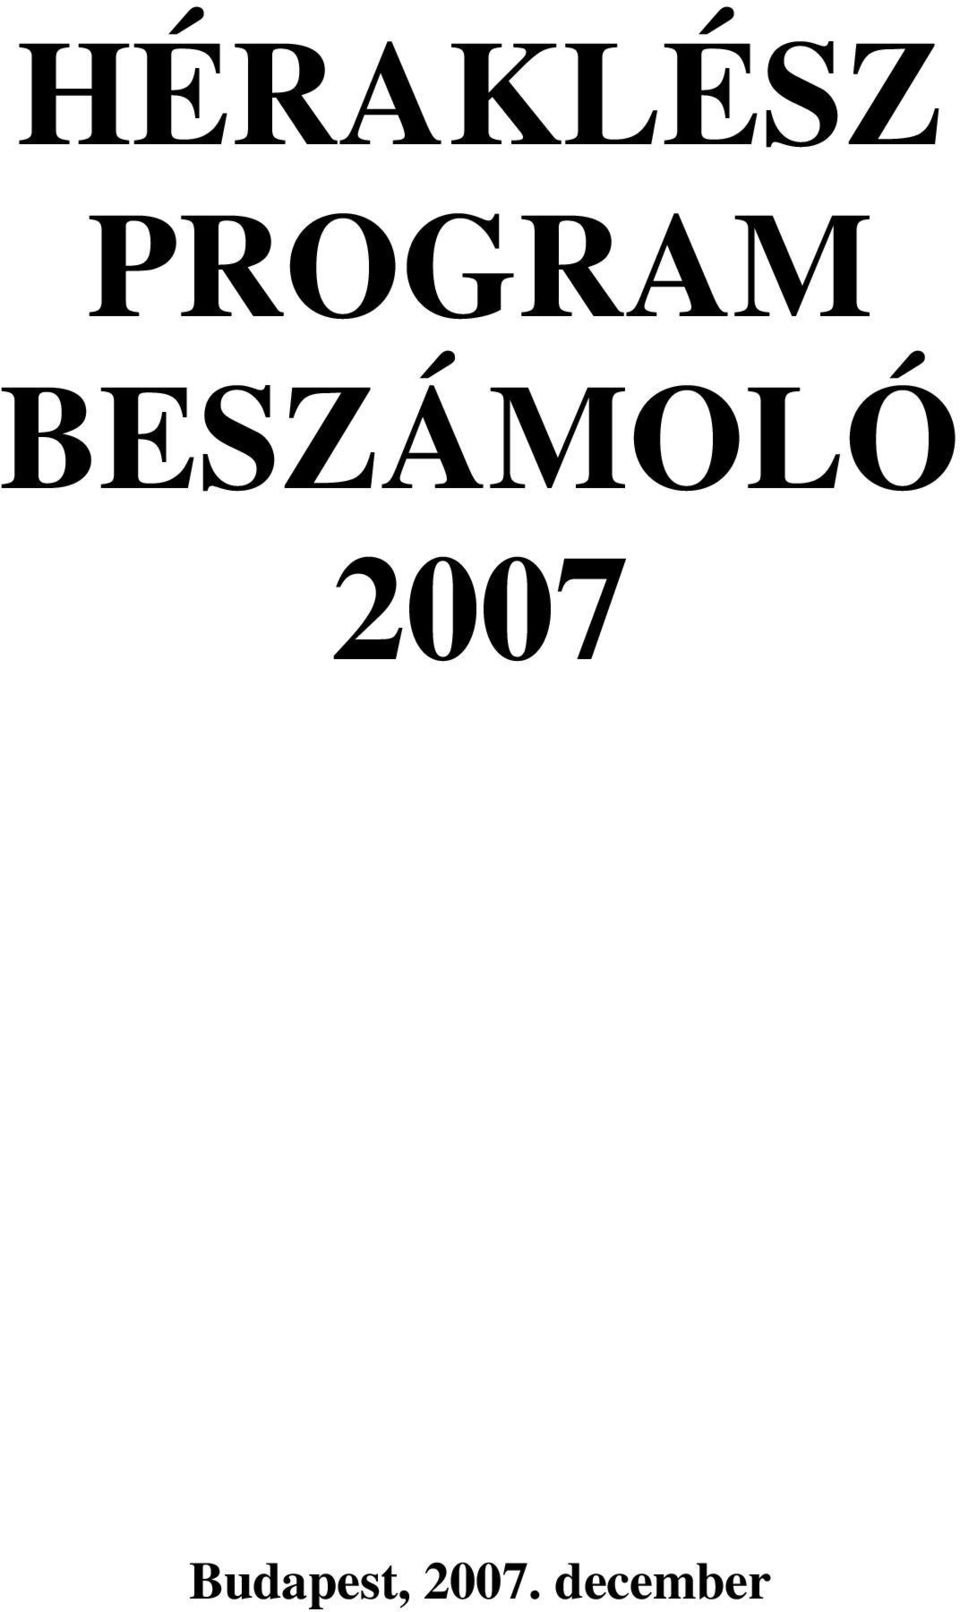 BESZÁMOLÓ 2007